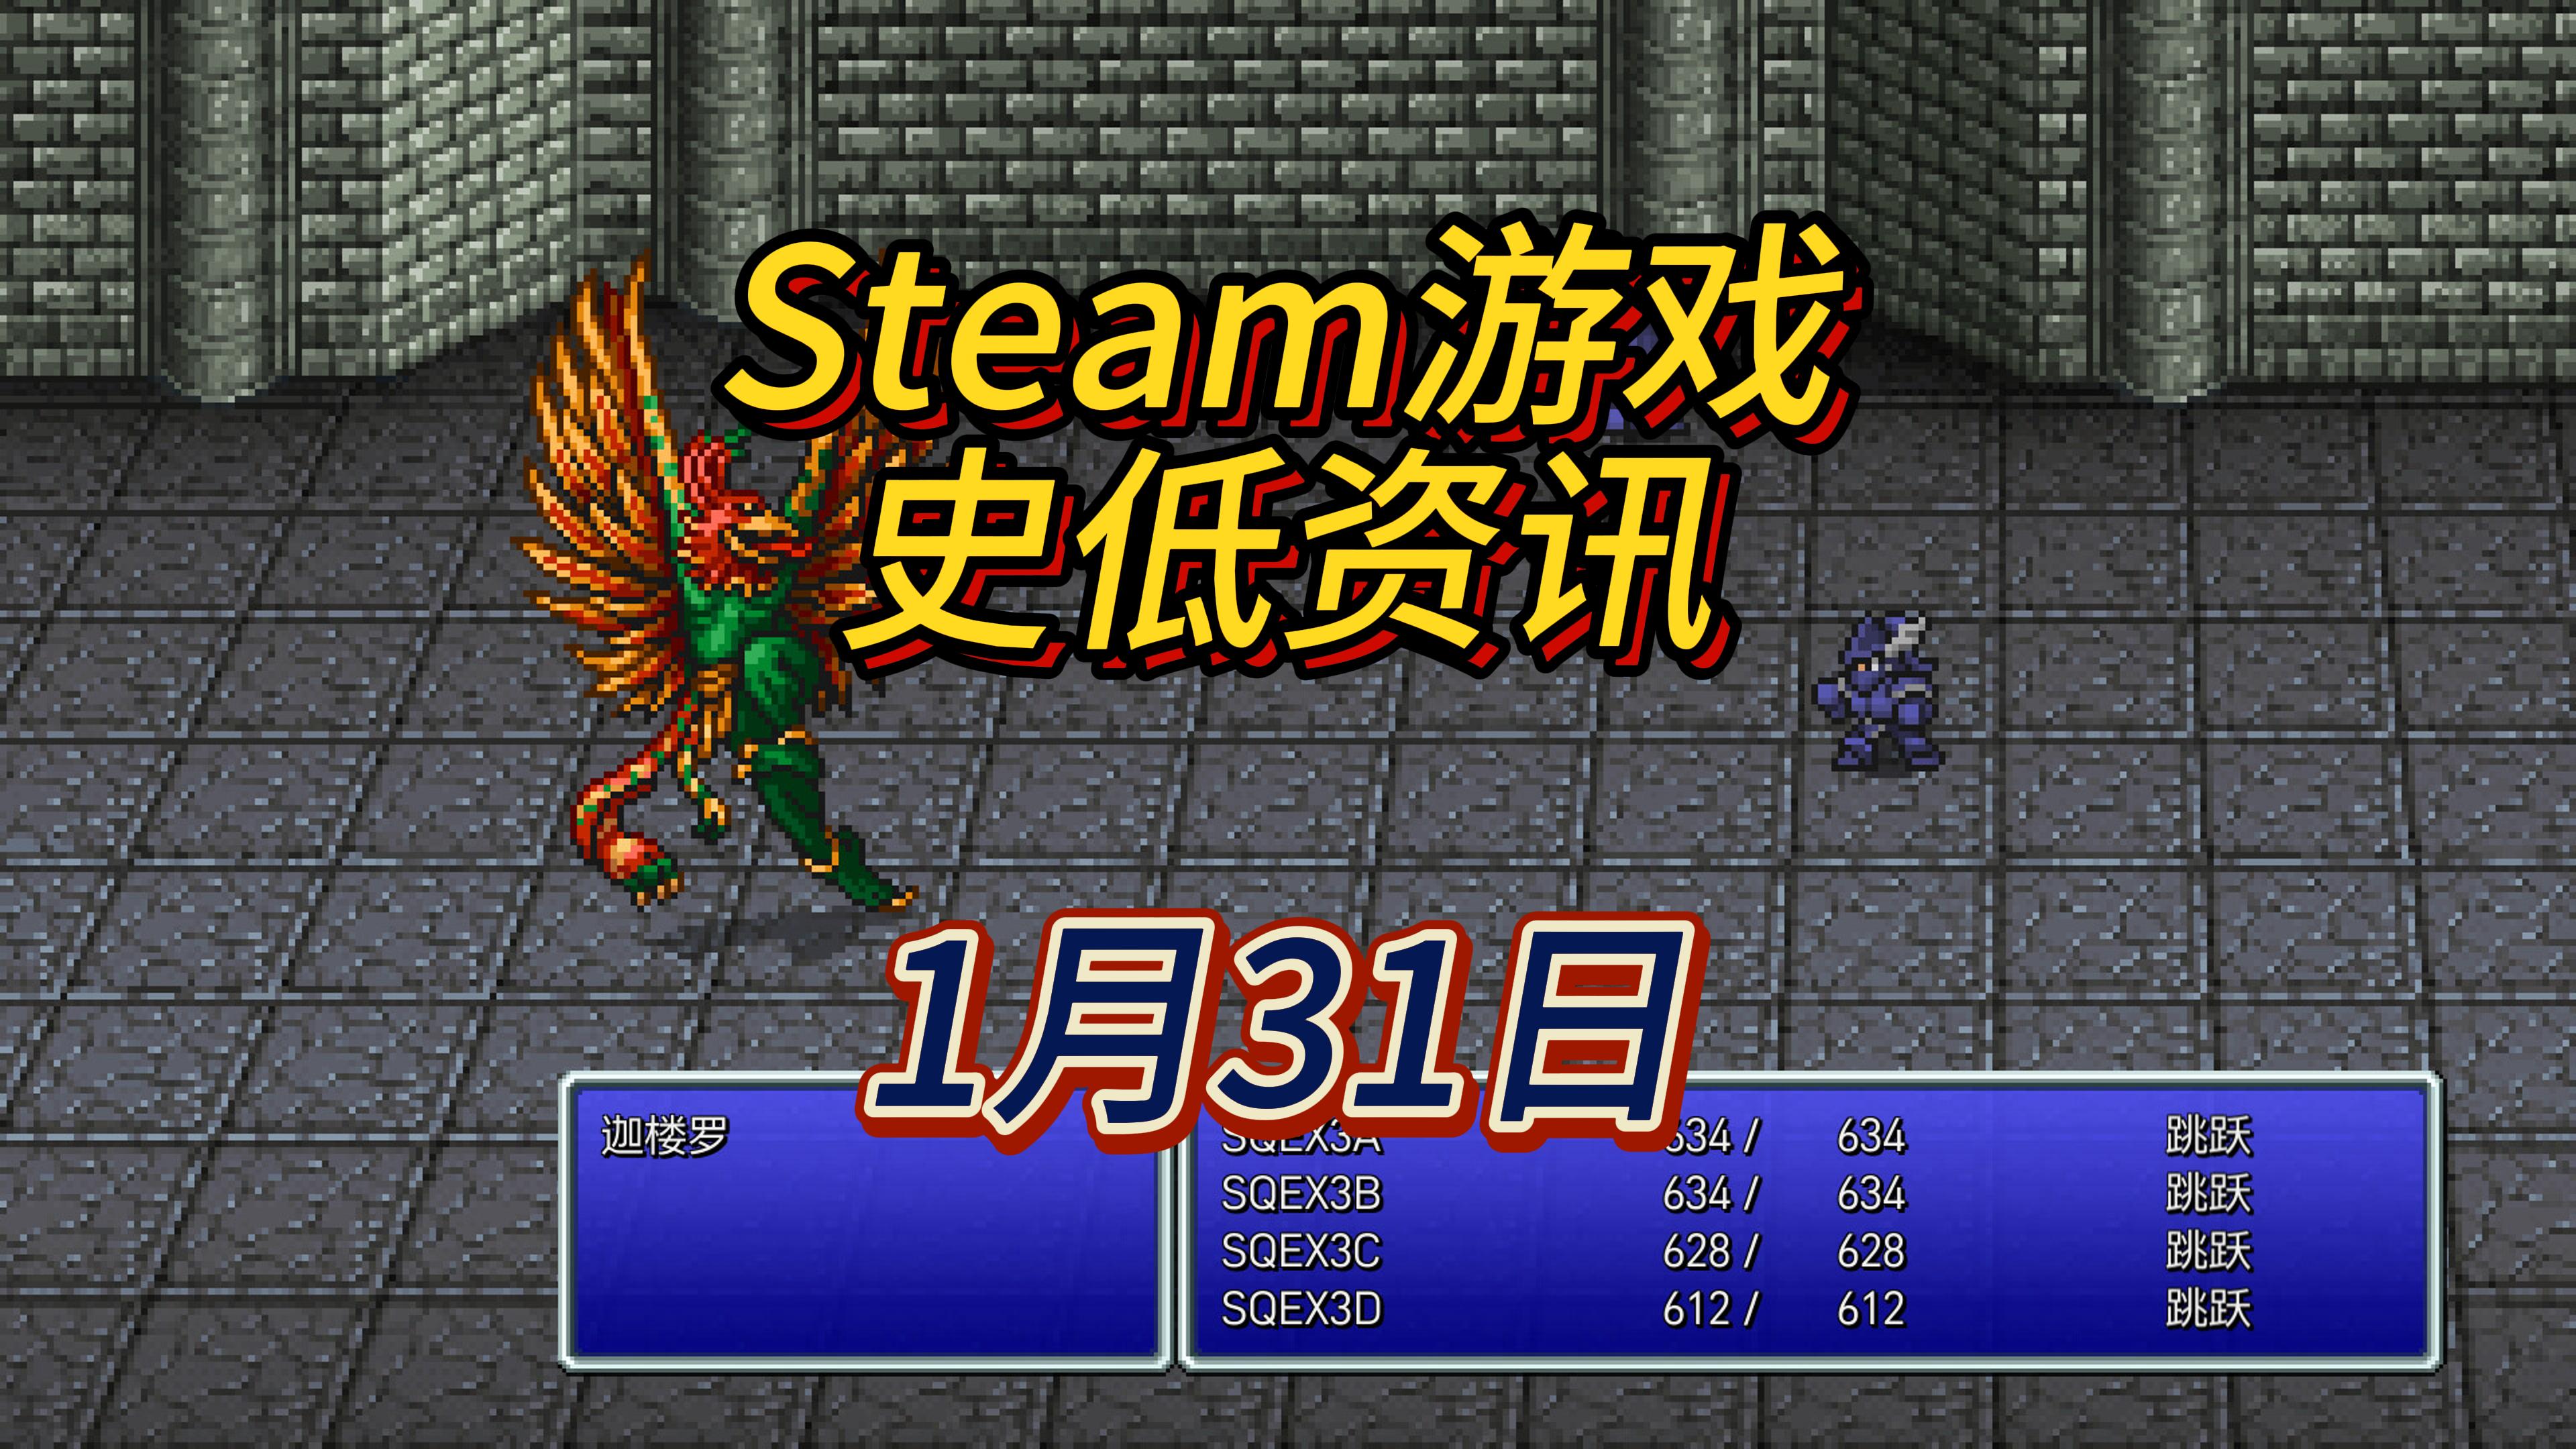 最终幻想老游戏平史低，幽灵线：东京新史低，1 月 31 日 Steam 史低游戏 Part 1